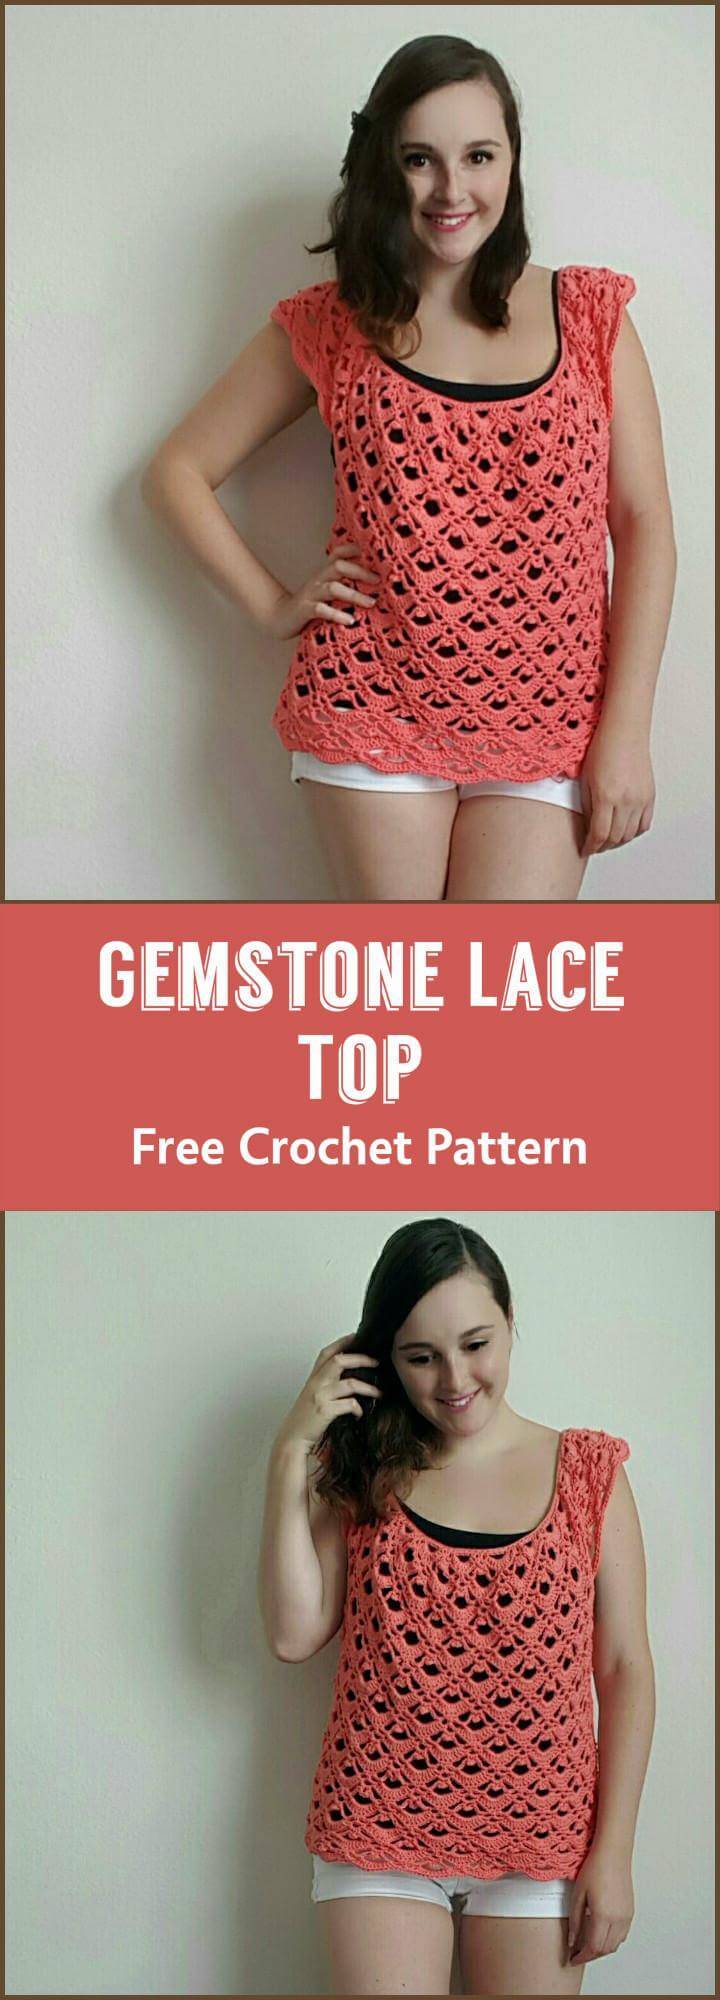 Gemstone Lace Top Free Crochet Pattern